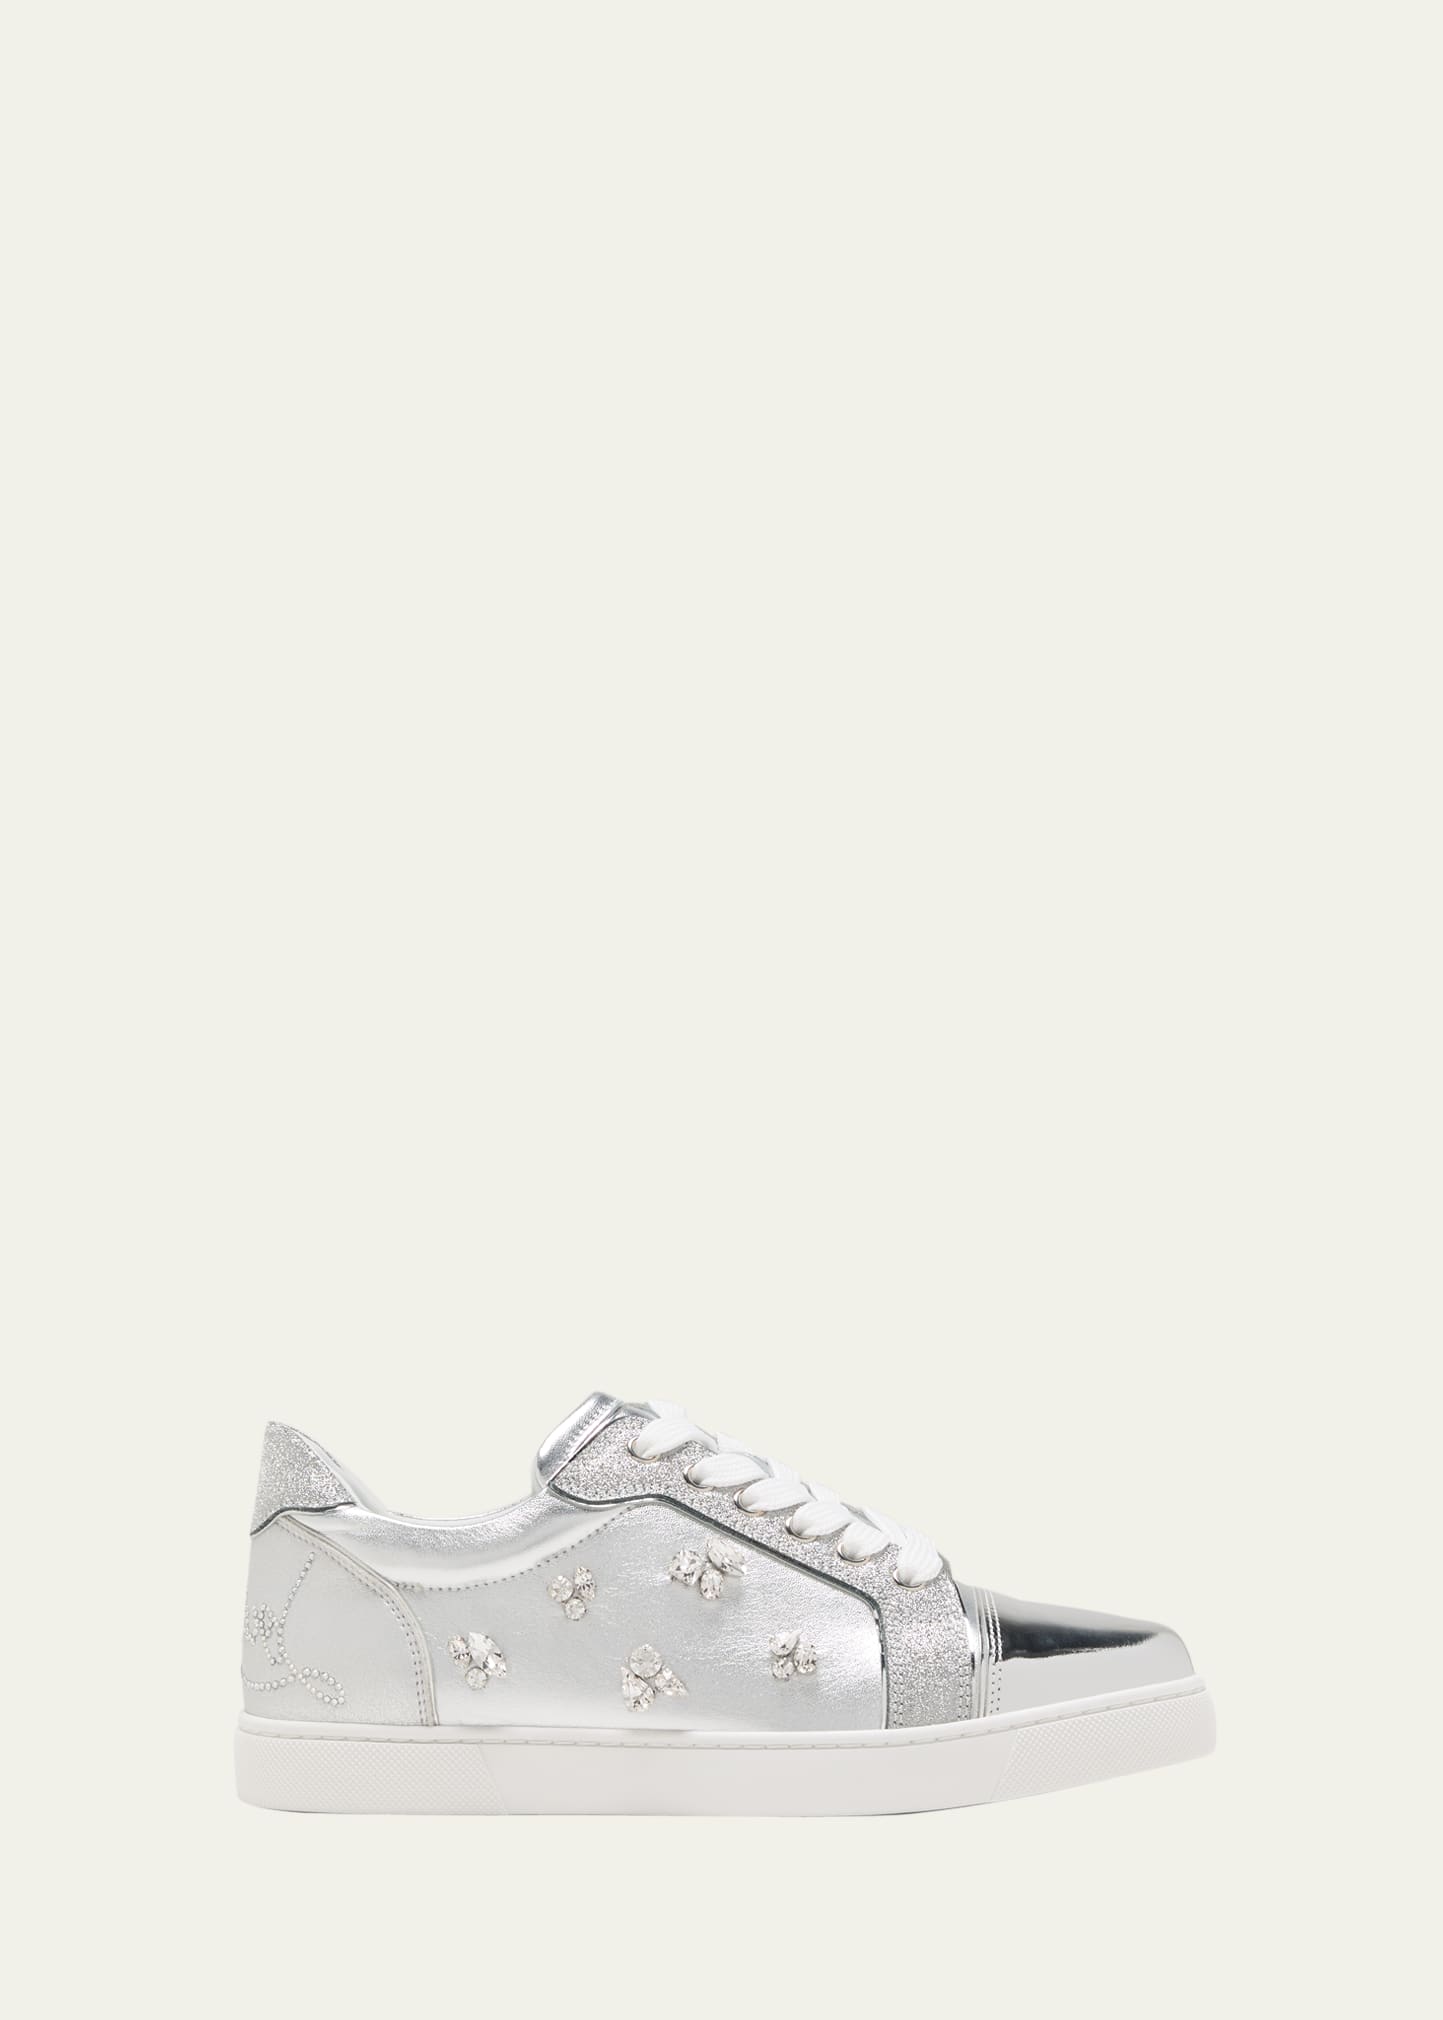 Christian Louboutin Vieira Leather Sneakers - White - 40